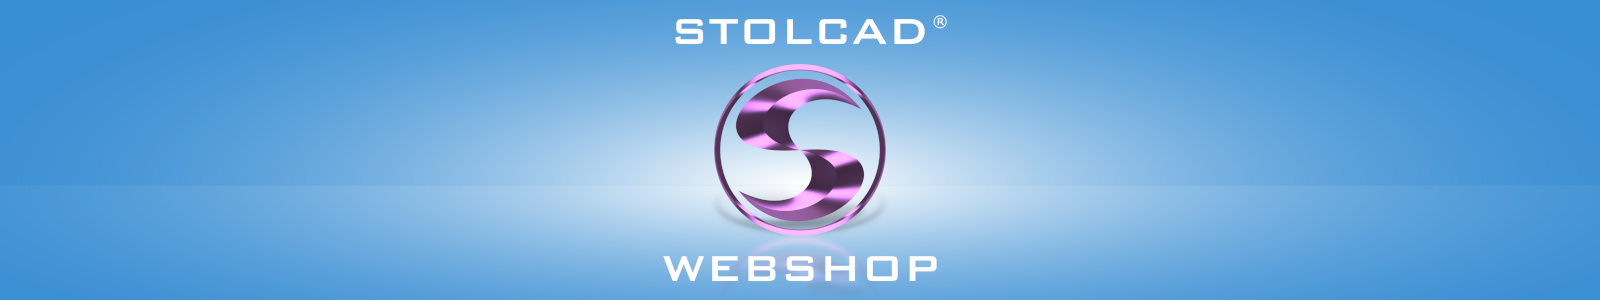 Stolcad Webshop - уебсайт за търговци за офертиране на прозорци, врати и щори